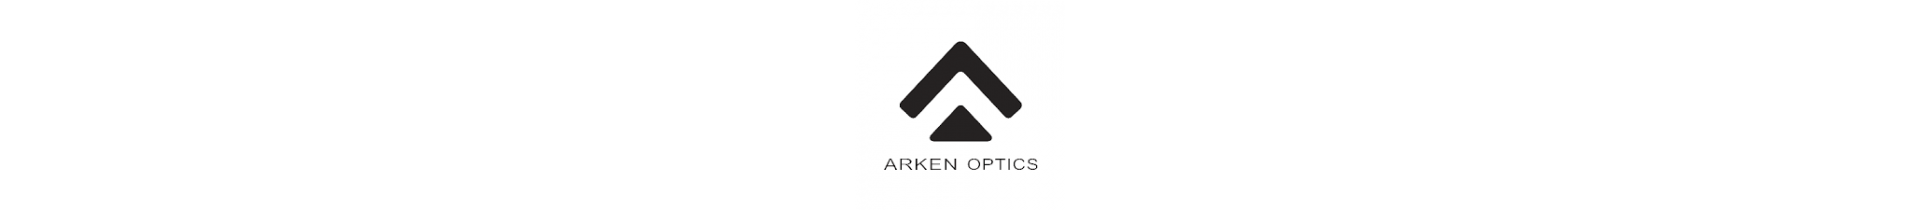 Une sélection d'optique de qualité prenium, arken optics est la marque la plus qualitative du marché de l'optique avec des tarifs d'un très bon rapport qualité prix  sur votre boutique www.tactirshop.fr